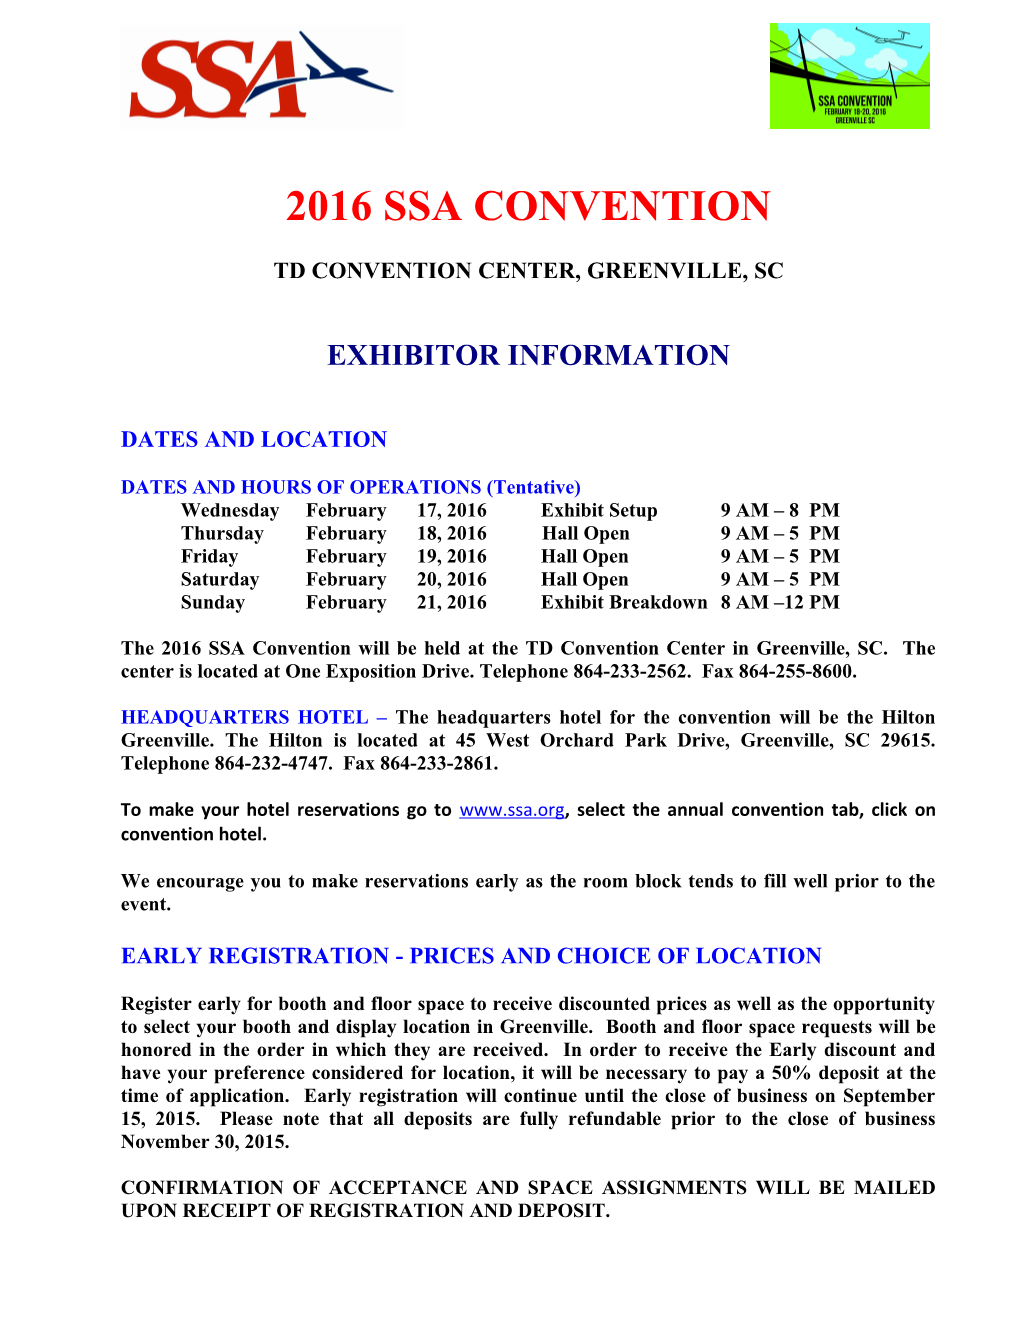 2005 Ssa Annual Convention